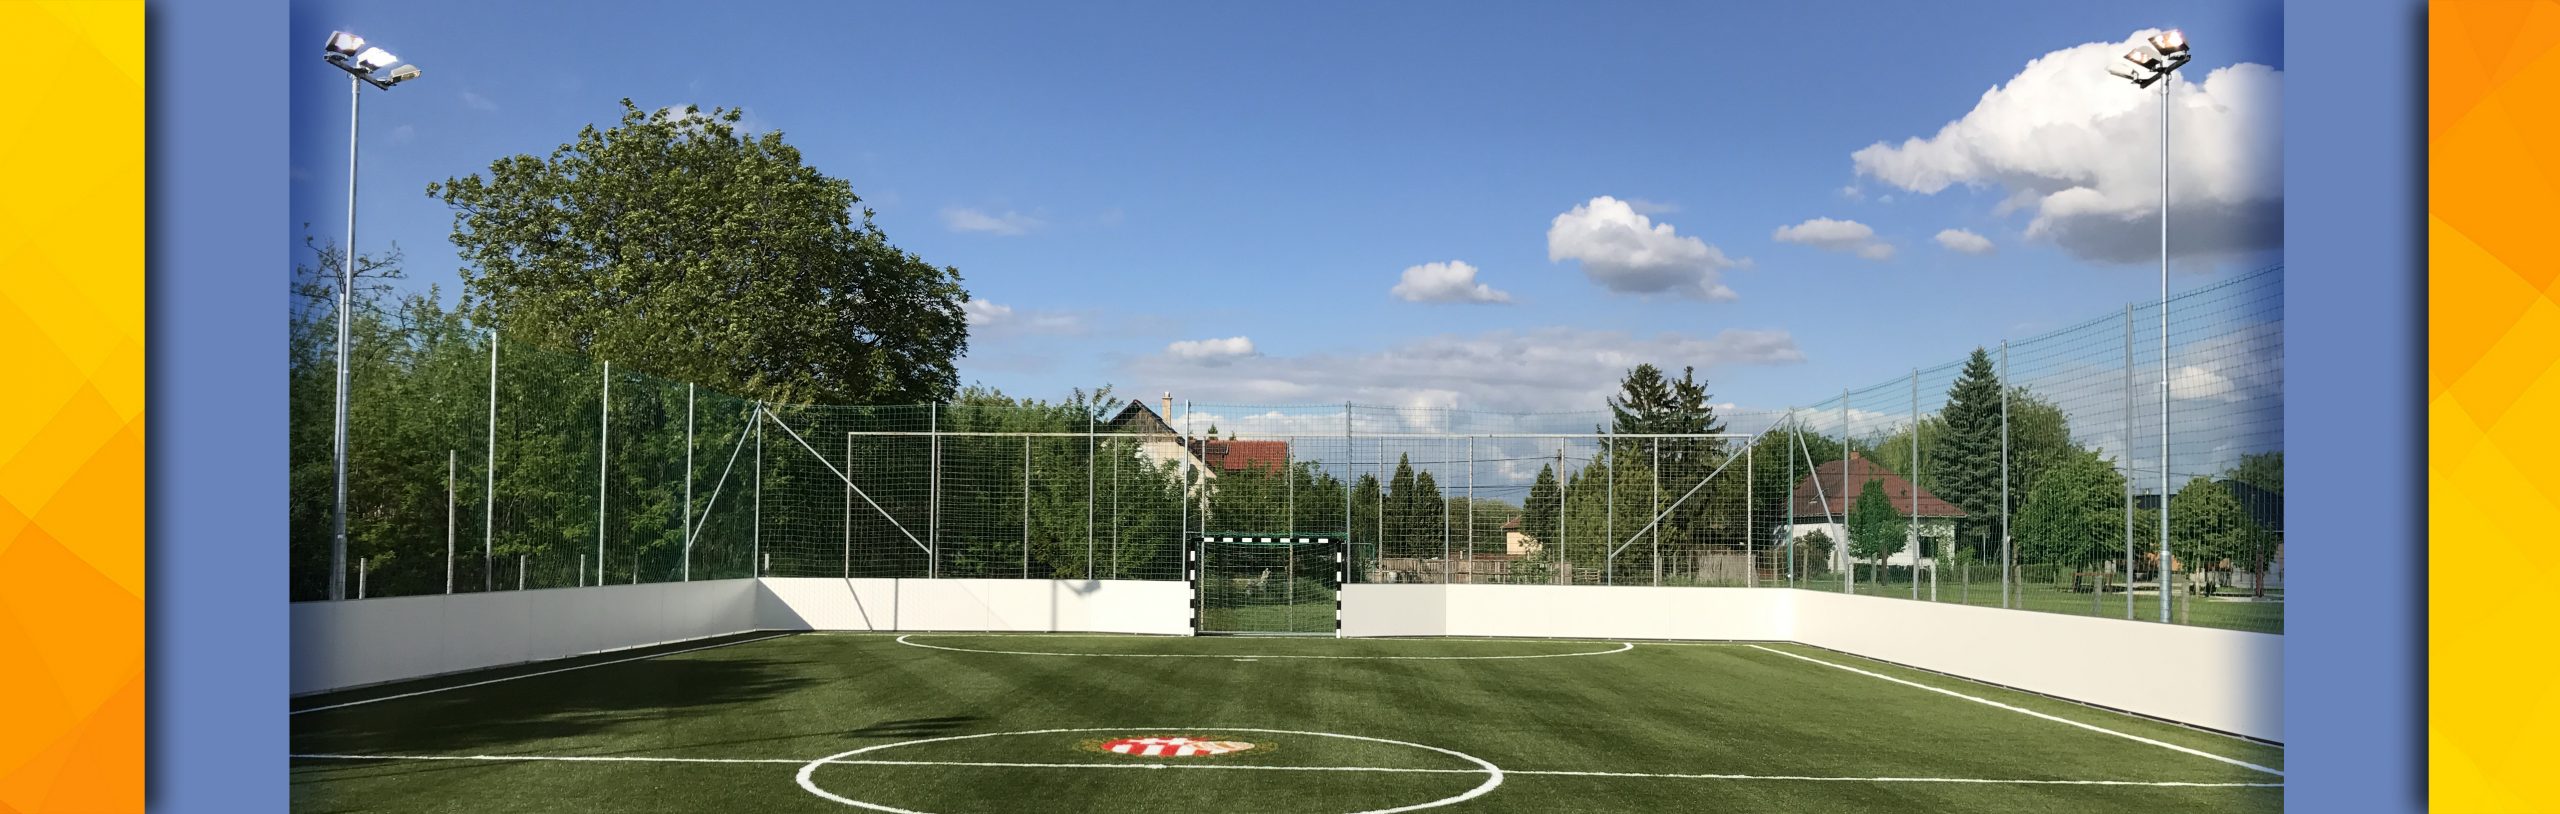 FC Tiszaújváros – 350 lux